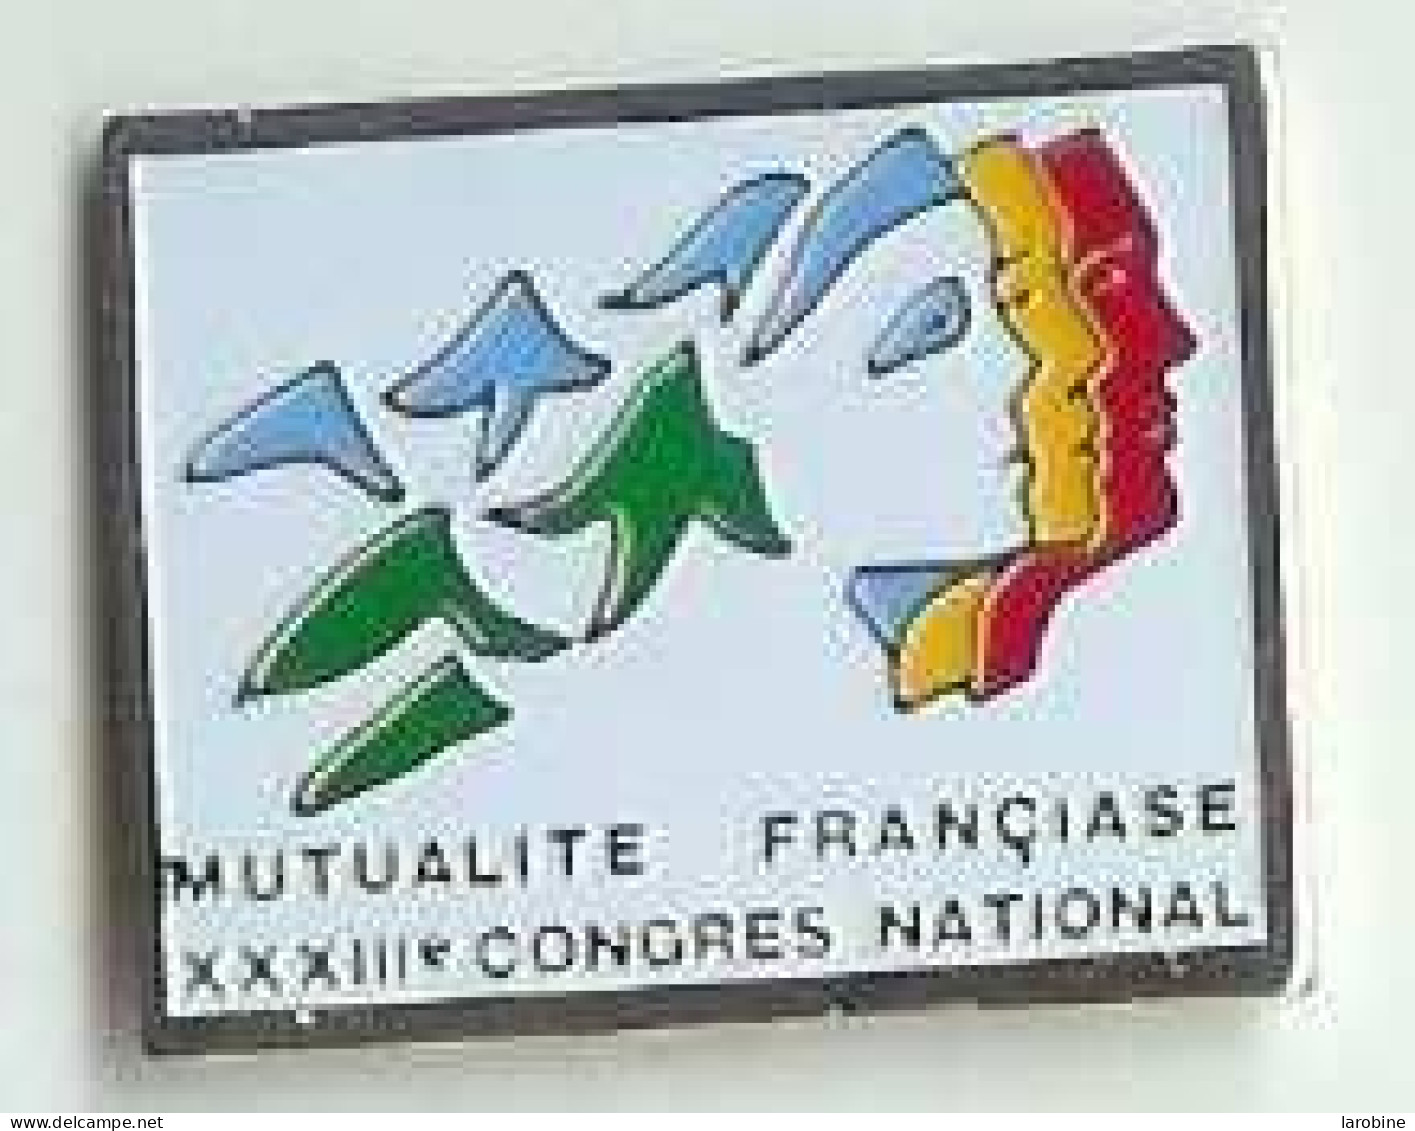 @@ Fraisse. Mutualité Francaise XXXIIIe Congrés National @@ba52 - Banken